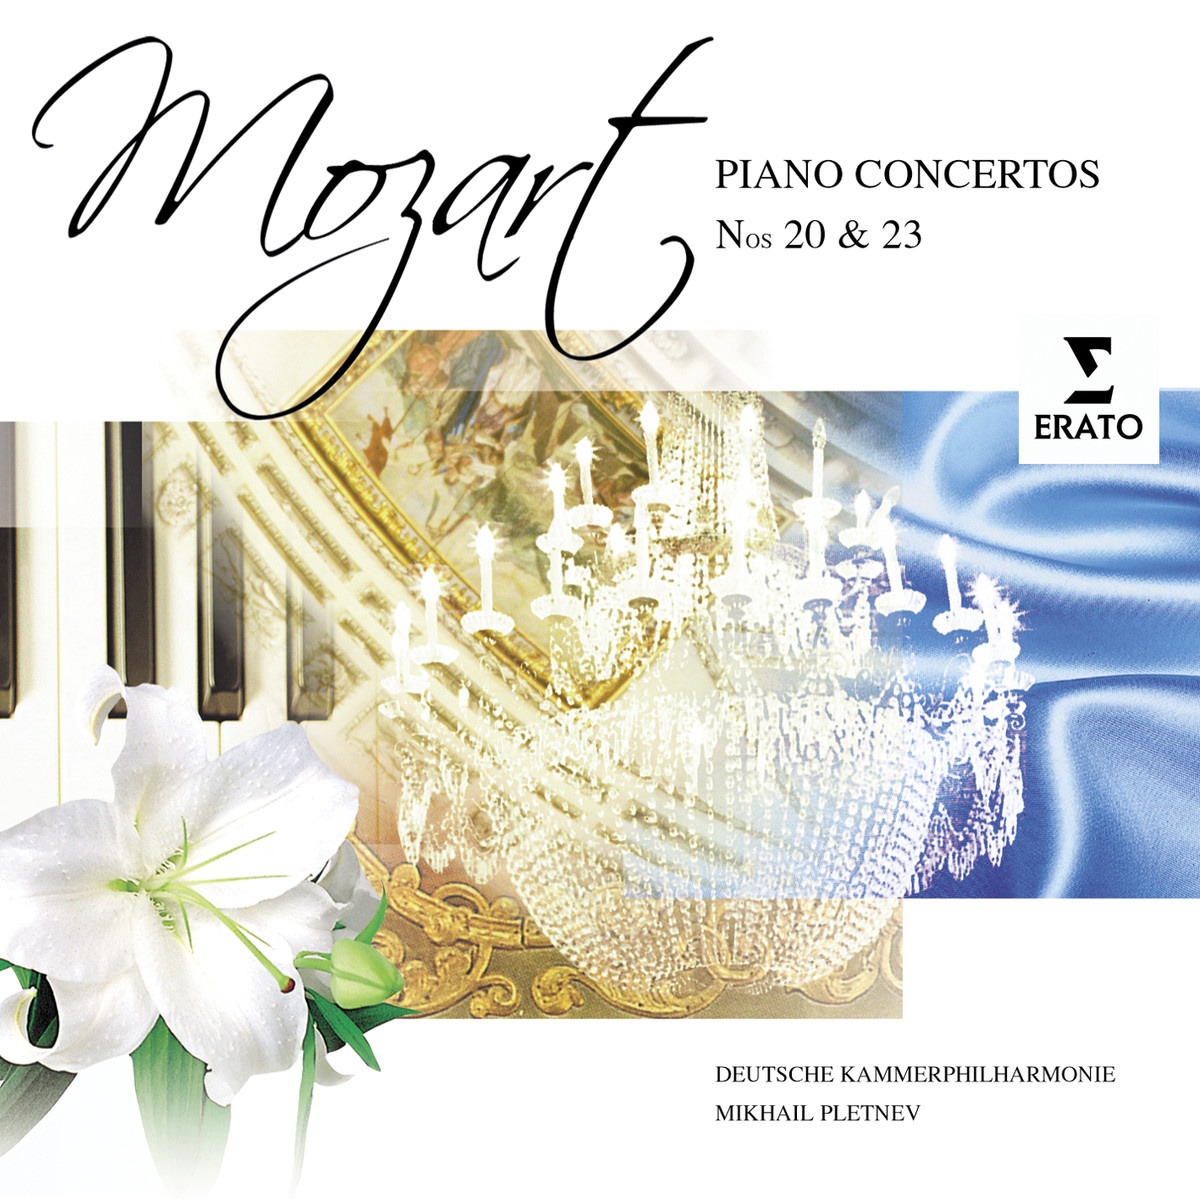 Piano Concerto No. 20 in D minor K466 (Cadenzas by Beethoven): I. Allegro - Cadenza - Tempo I